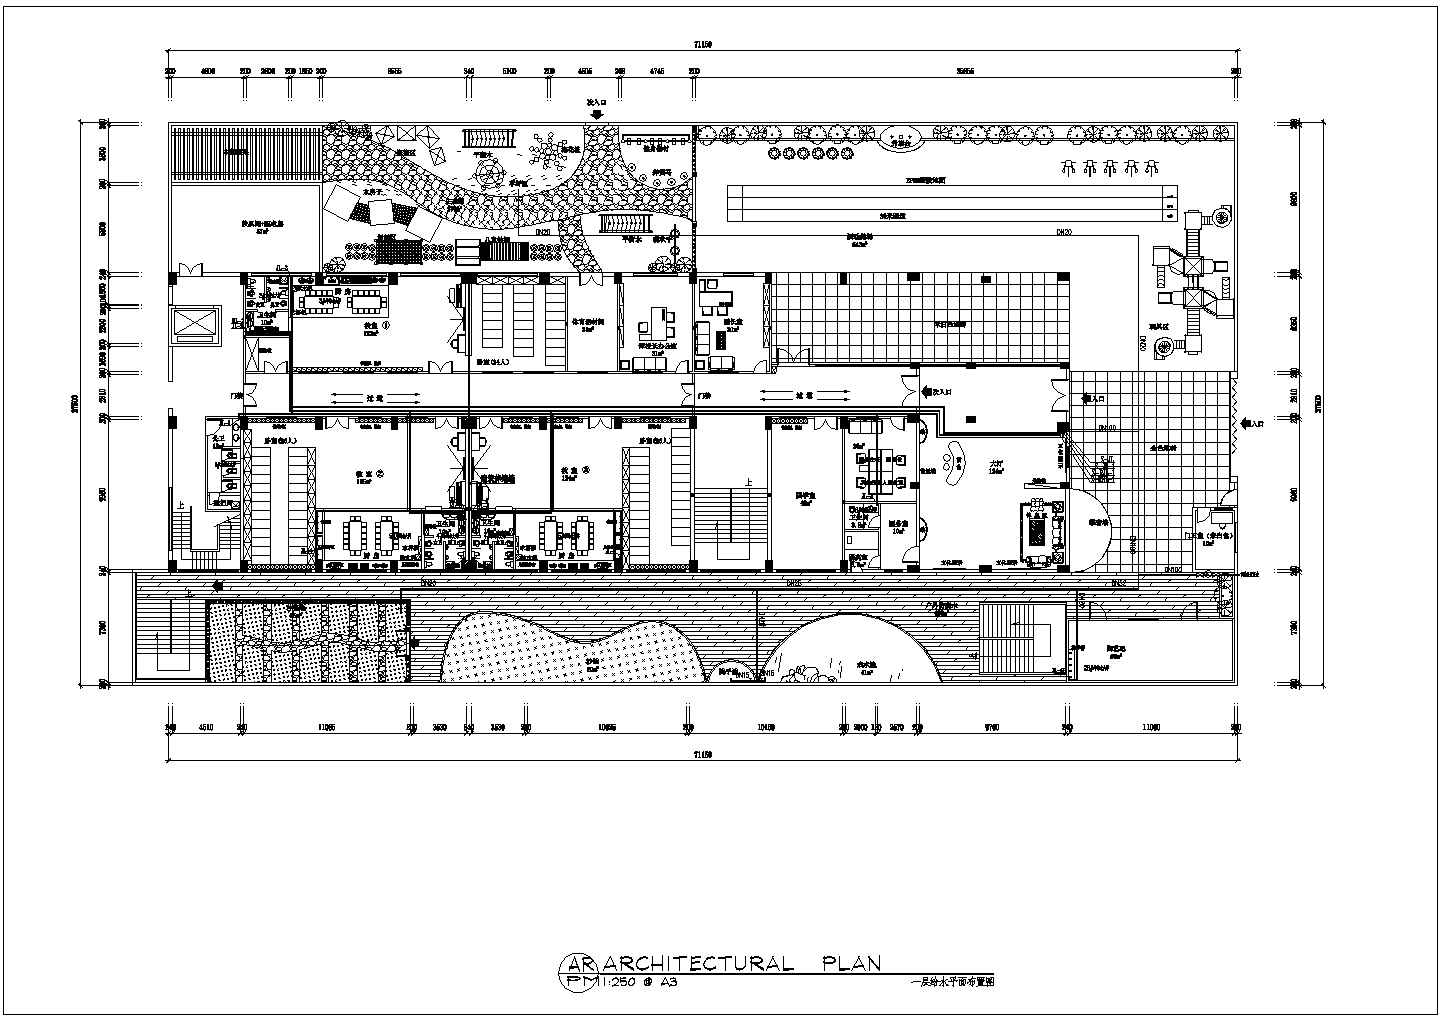 石龙惠斯顿某五层框架结构幼儿园给排水设计图纸